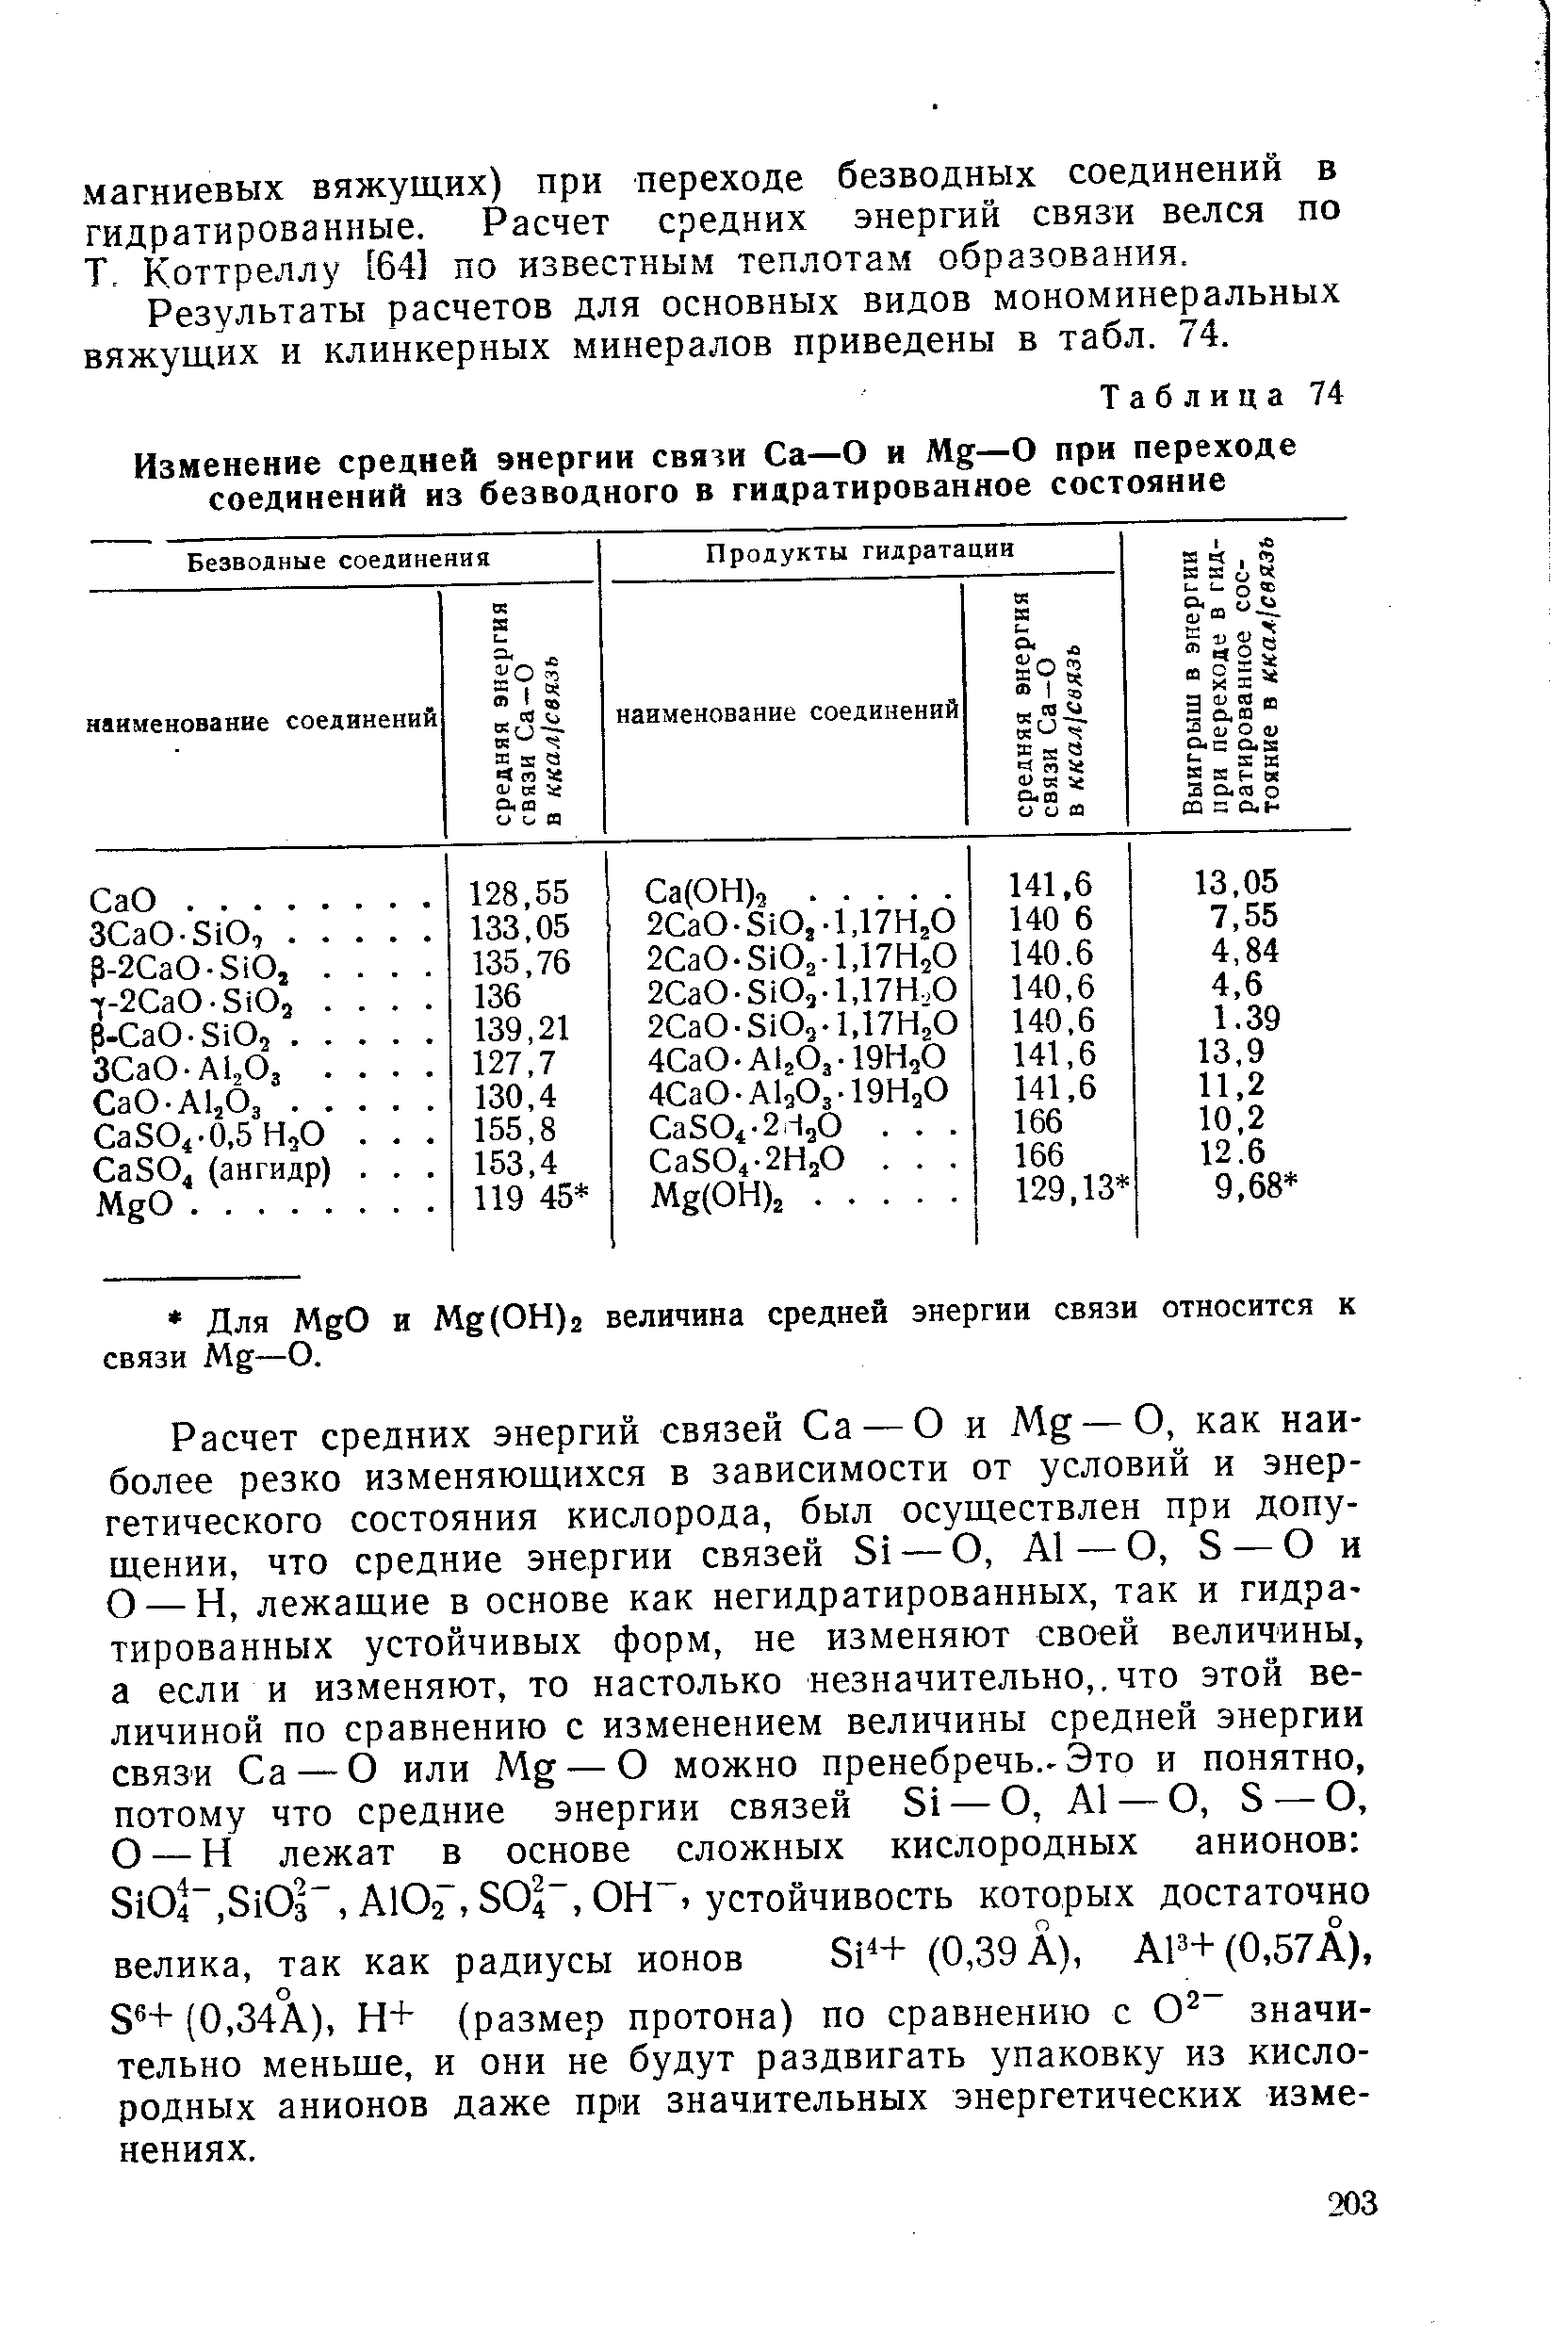 Результаты расчетов для основных видов мономинеральных вяжущих и клинкерных минералов приведены в табл. 74.